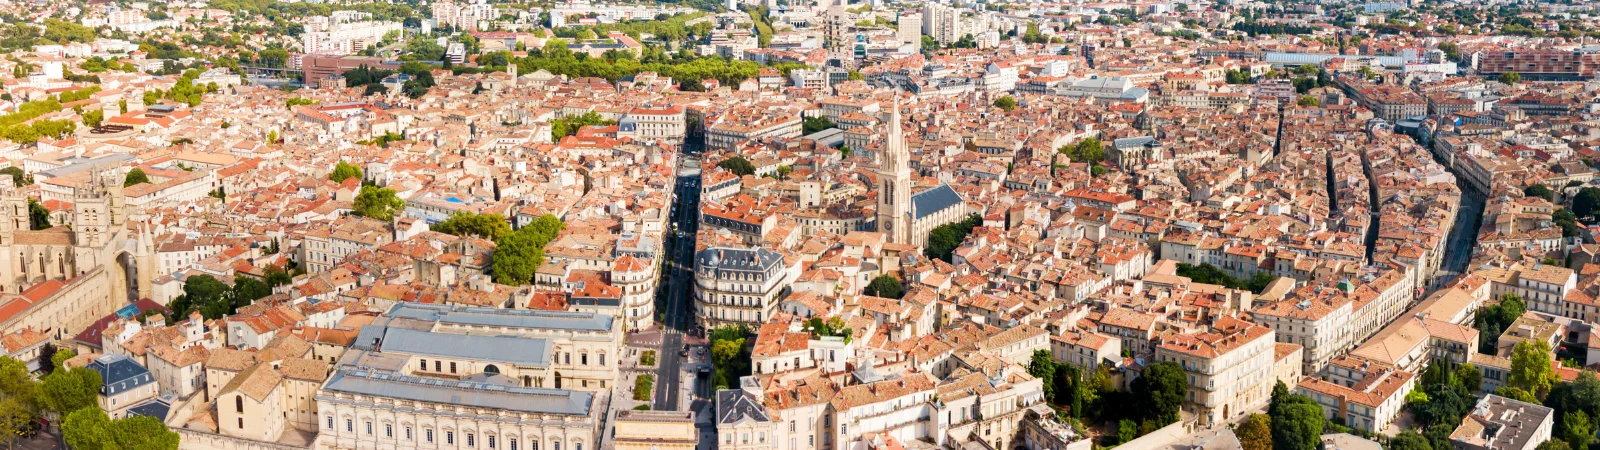 Vue panoramique de la ville de Montpellier